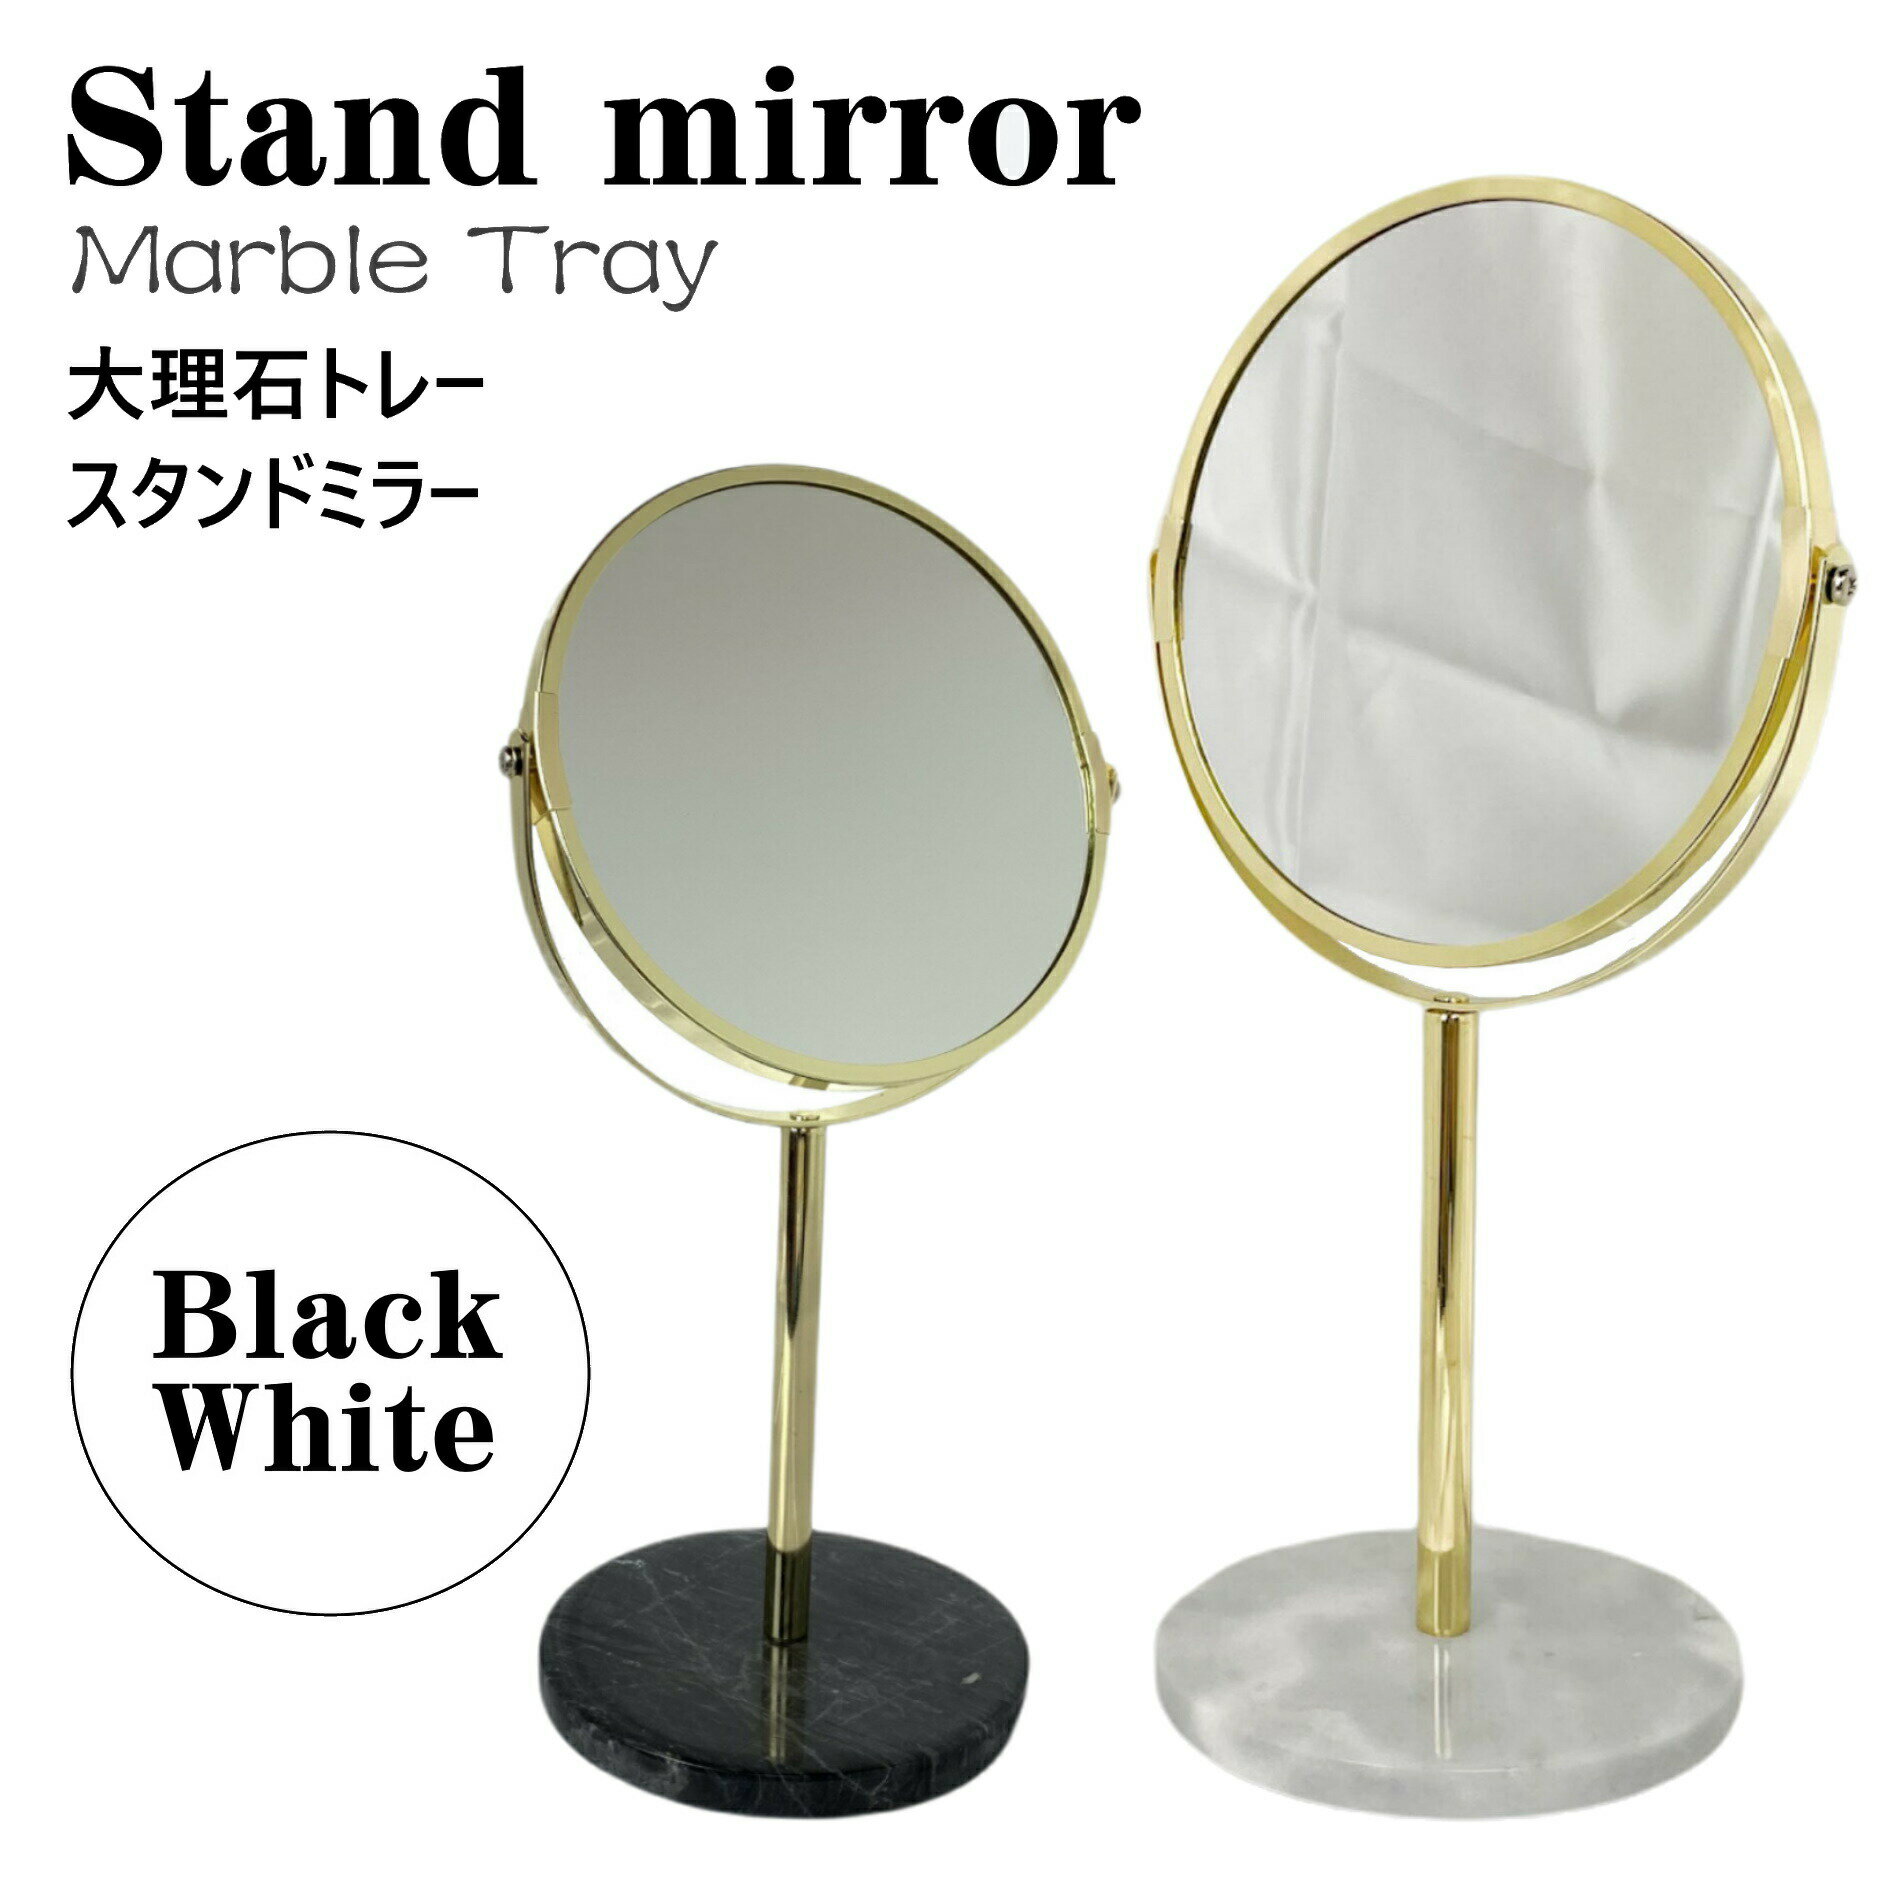 大理石 スタンドミラー 卓上 化粧鏡 インテリア雑貨 シンプル ホワイト ブラック tr12